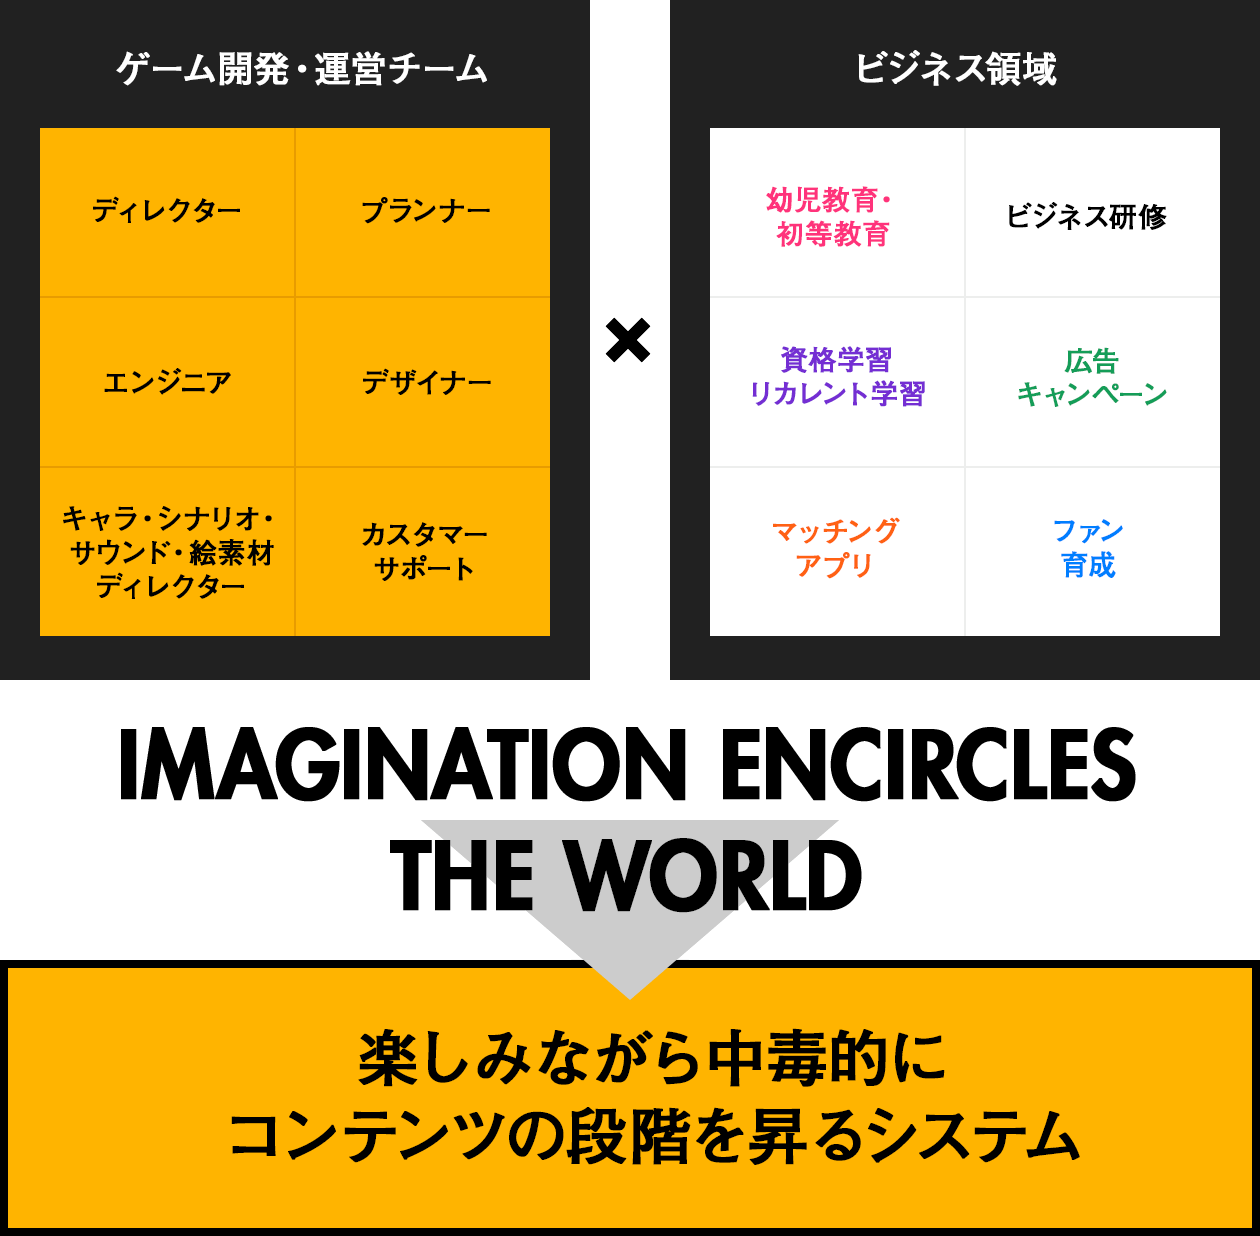 1×1を1以上にできるような仕組みがImagination encircles the world.